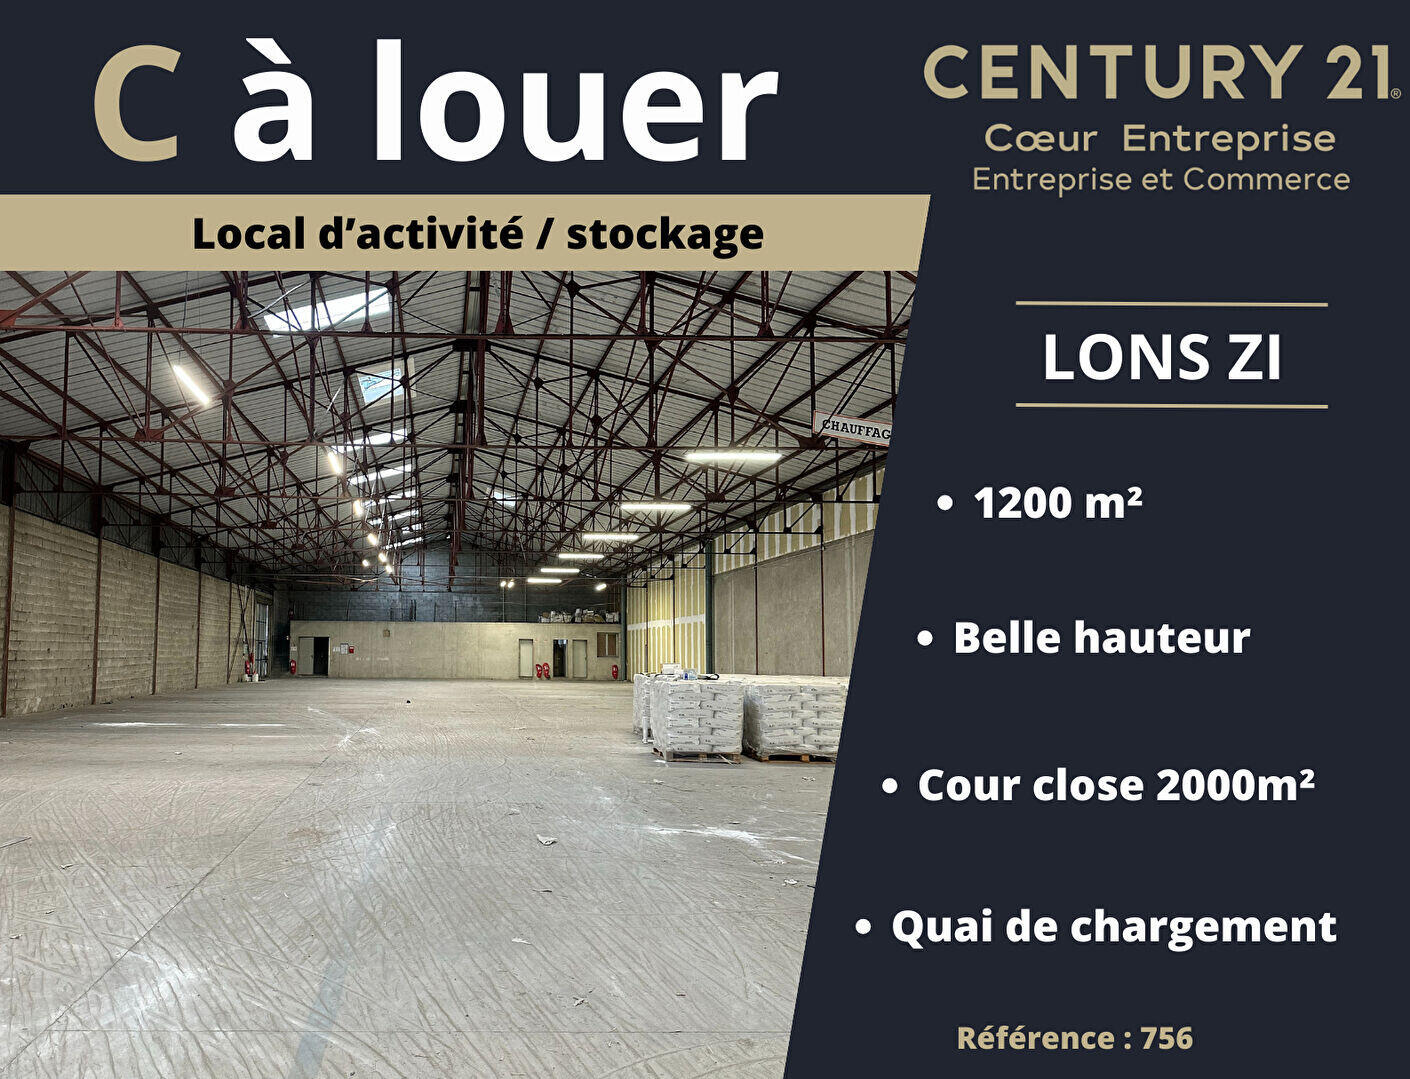 Loue entrepôt/stockage 1200m² ZI Lons-le-Saunier